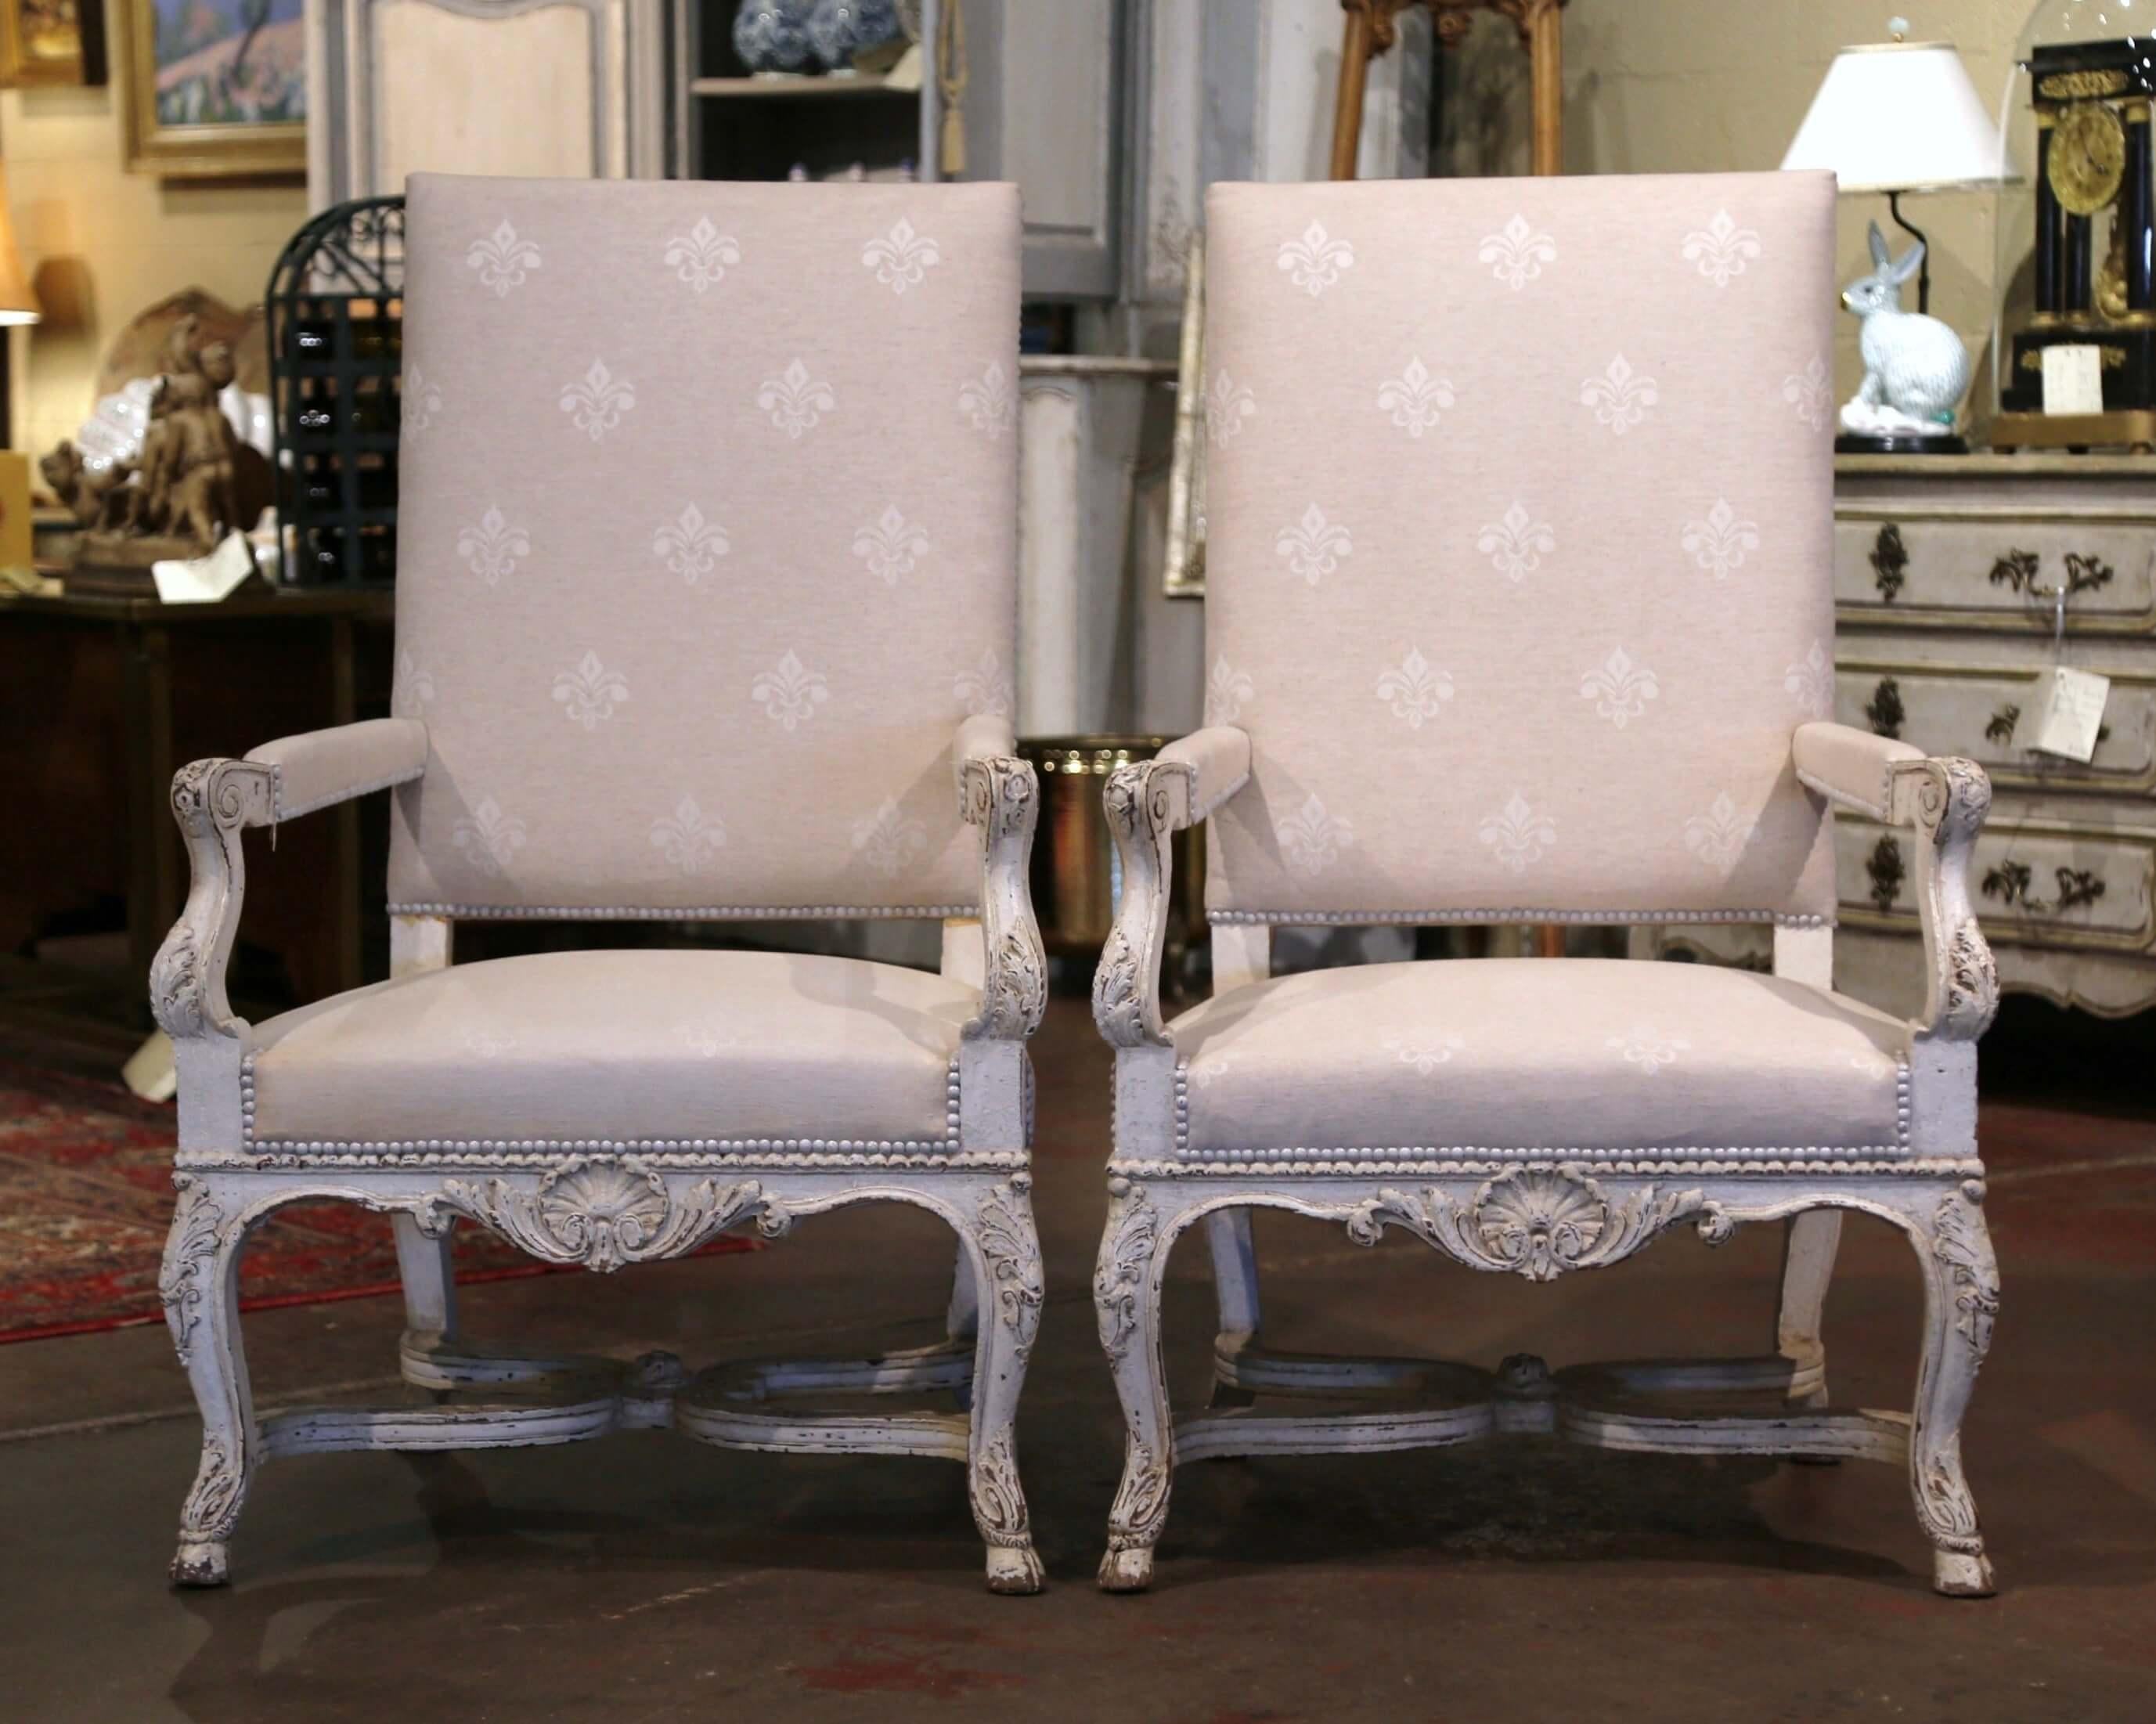 Diese eleganten antiken Sessel wurden um 1870 in Frankreich hergestellt. Jeder große Fauteuil steht auf Cabriole-Beinen, die in Huffüßen enden, über einer komplizierten, geschwungenen unteren Bahre, die in der Mitte mit einem geschnitzten